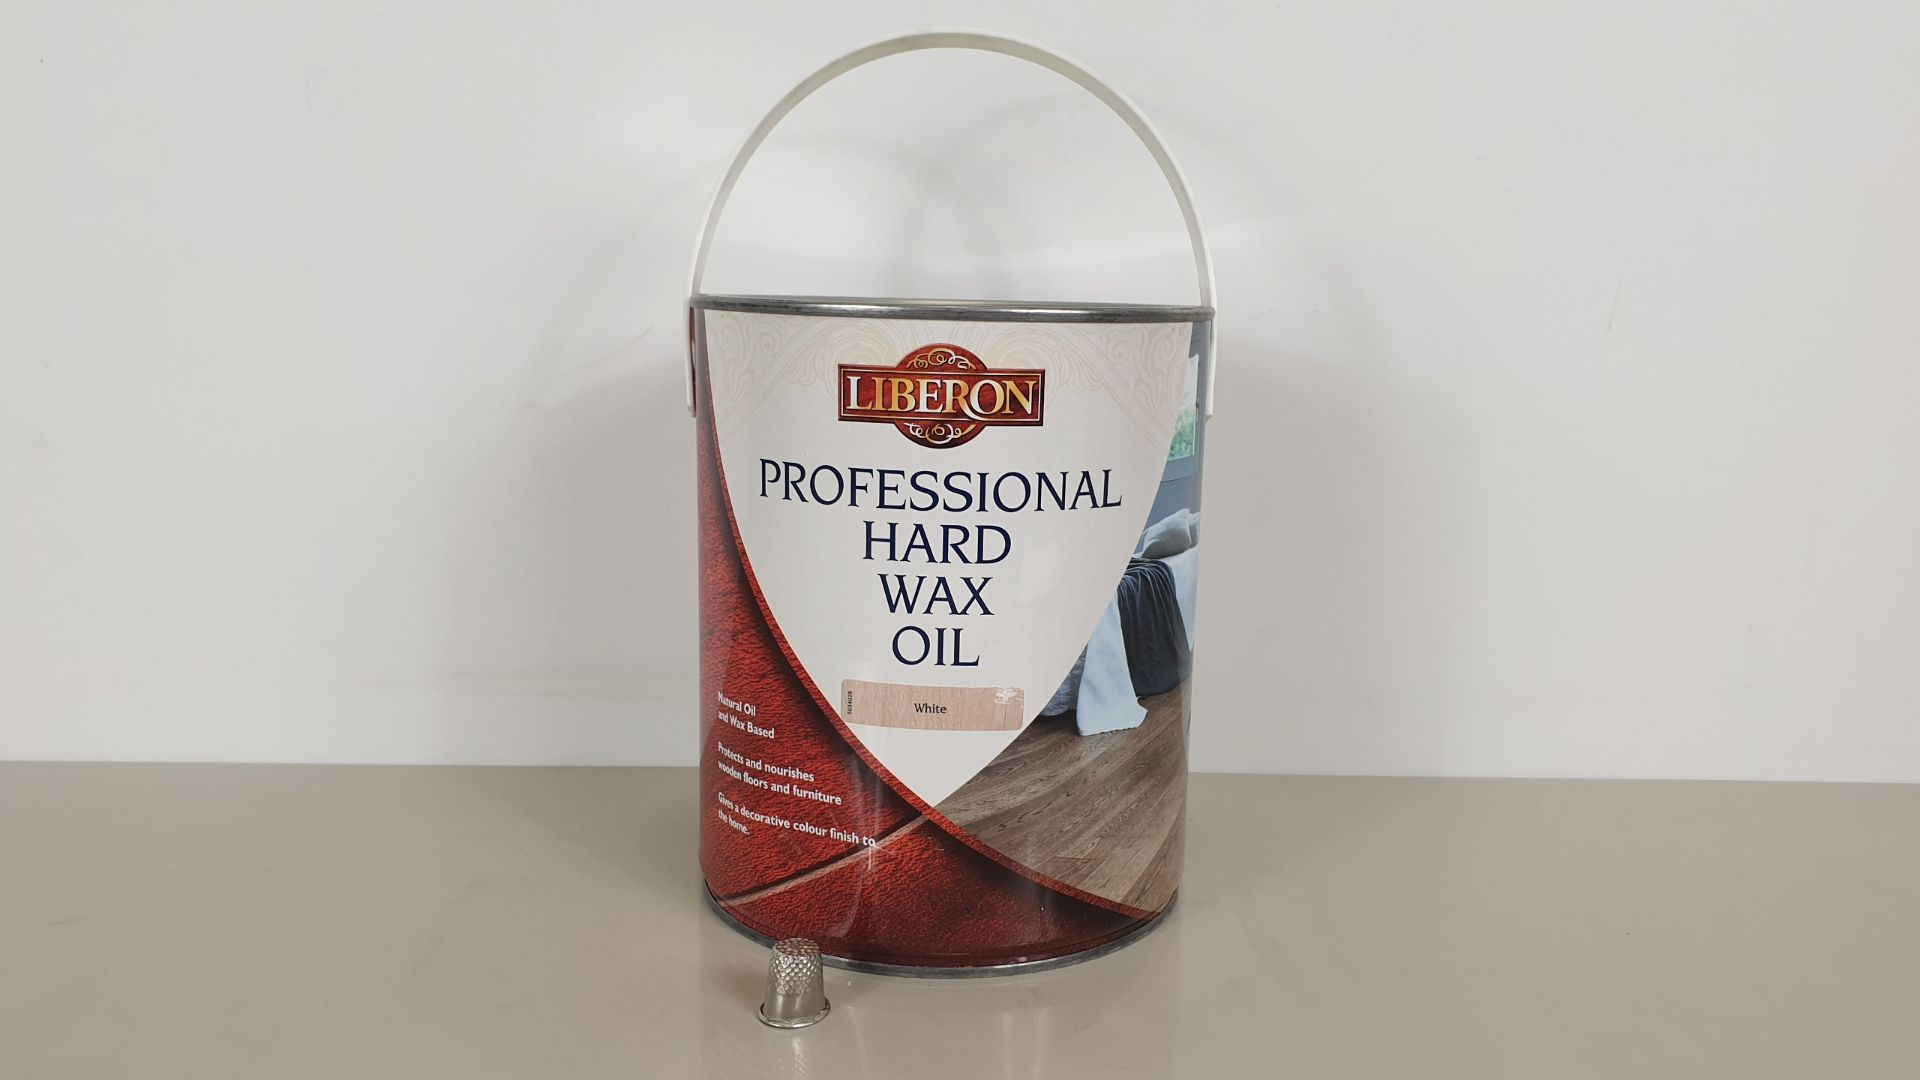 10 X LIBERON 2.5 LITRE PROFESSIONAL HARD WAX FURNITURE OIL - LIGHT GREY